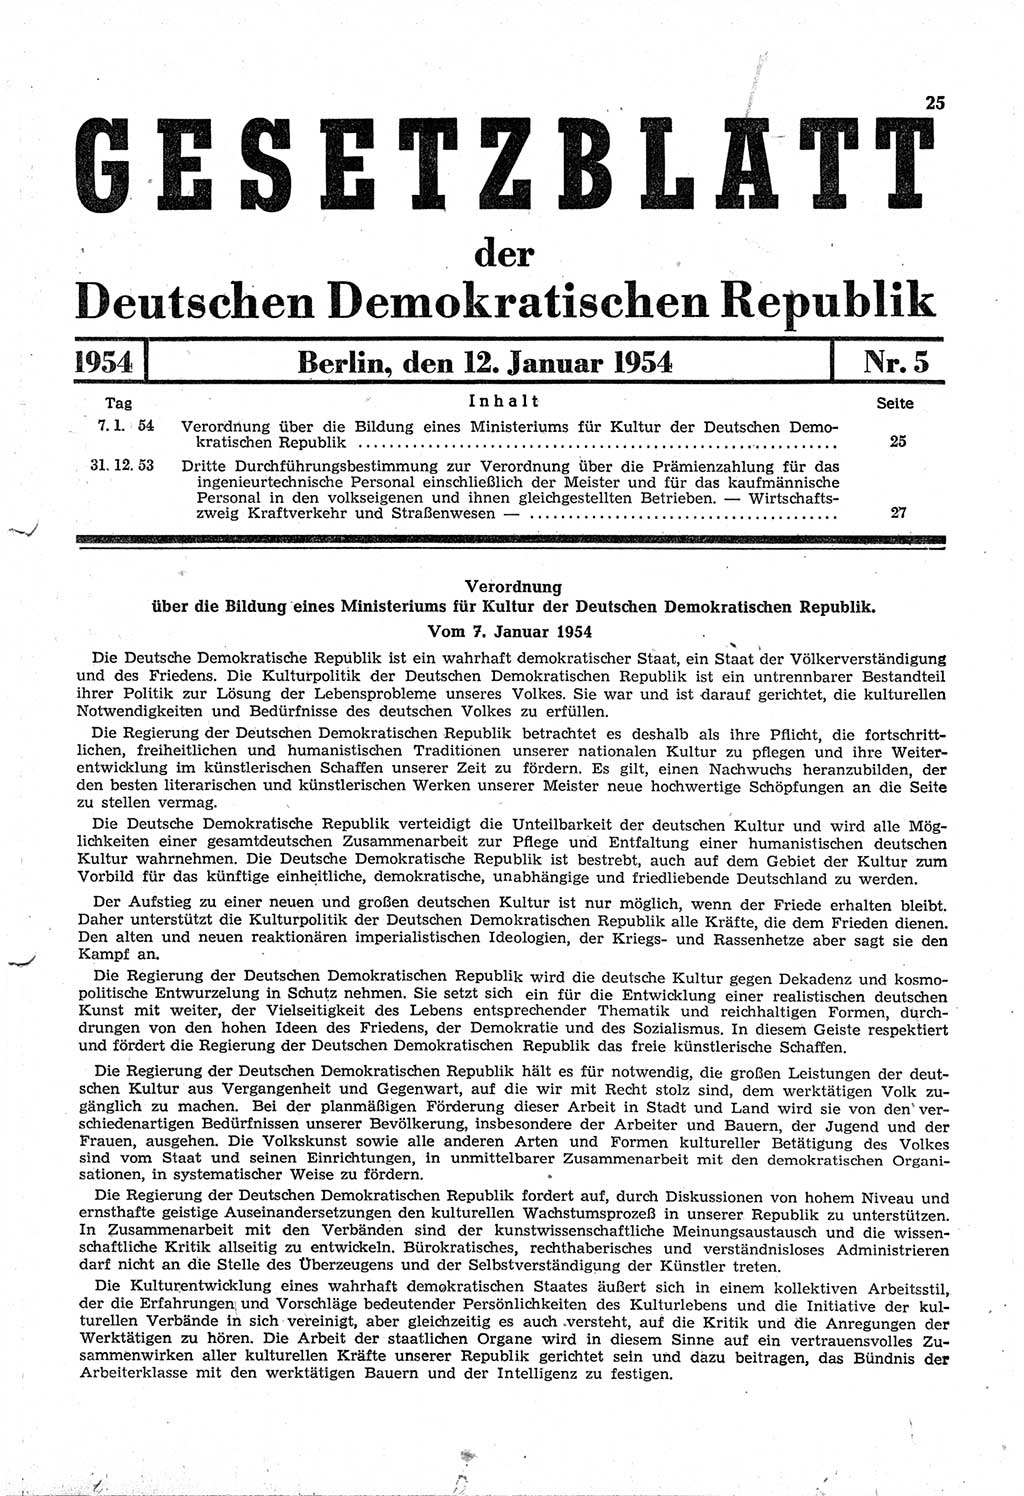 Gesetzblatt (GBl.) der Deutschen Demokratischen Republik (DDR) 1954, Seite 25 (GBl. DDR 1954, S. 25)